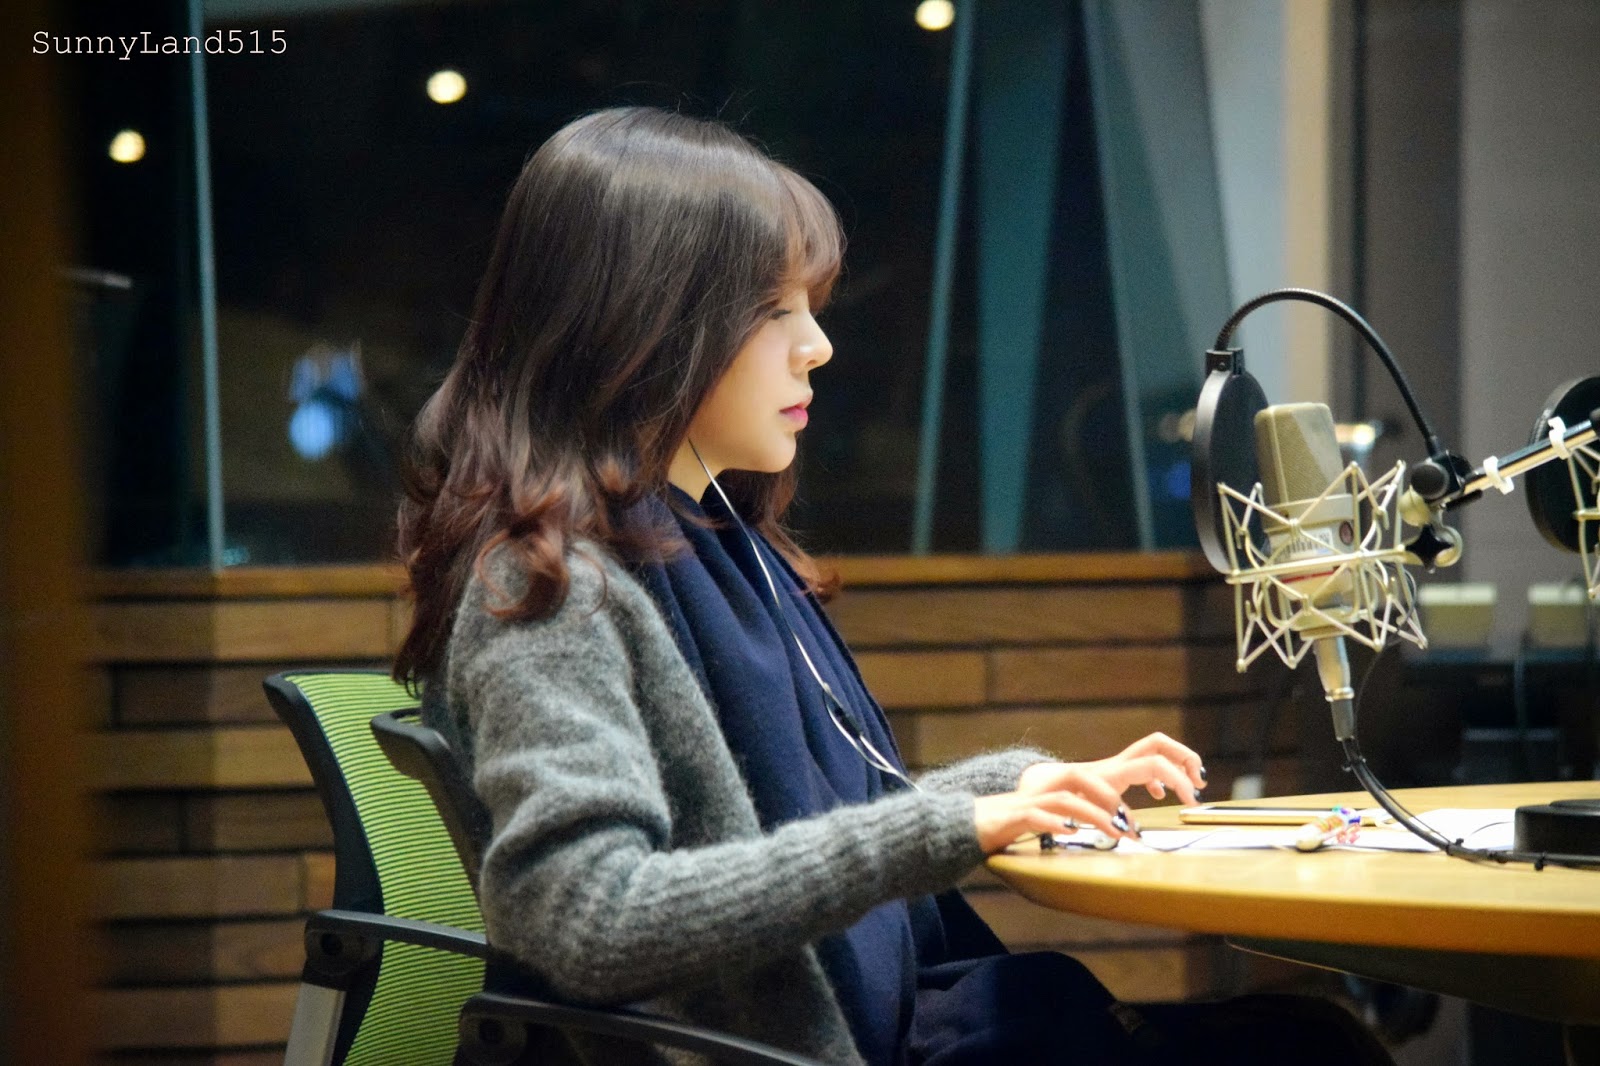 [OTHER][06-02-2015]Hình ảnh mới nhất từ DJ Sunny tại Radio MBC FM4U - "FM Date" - Page 10 DSC_0076_Fotor